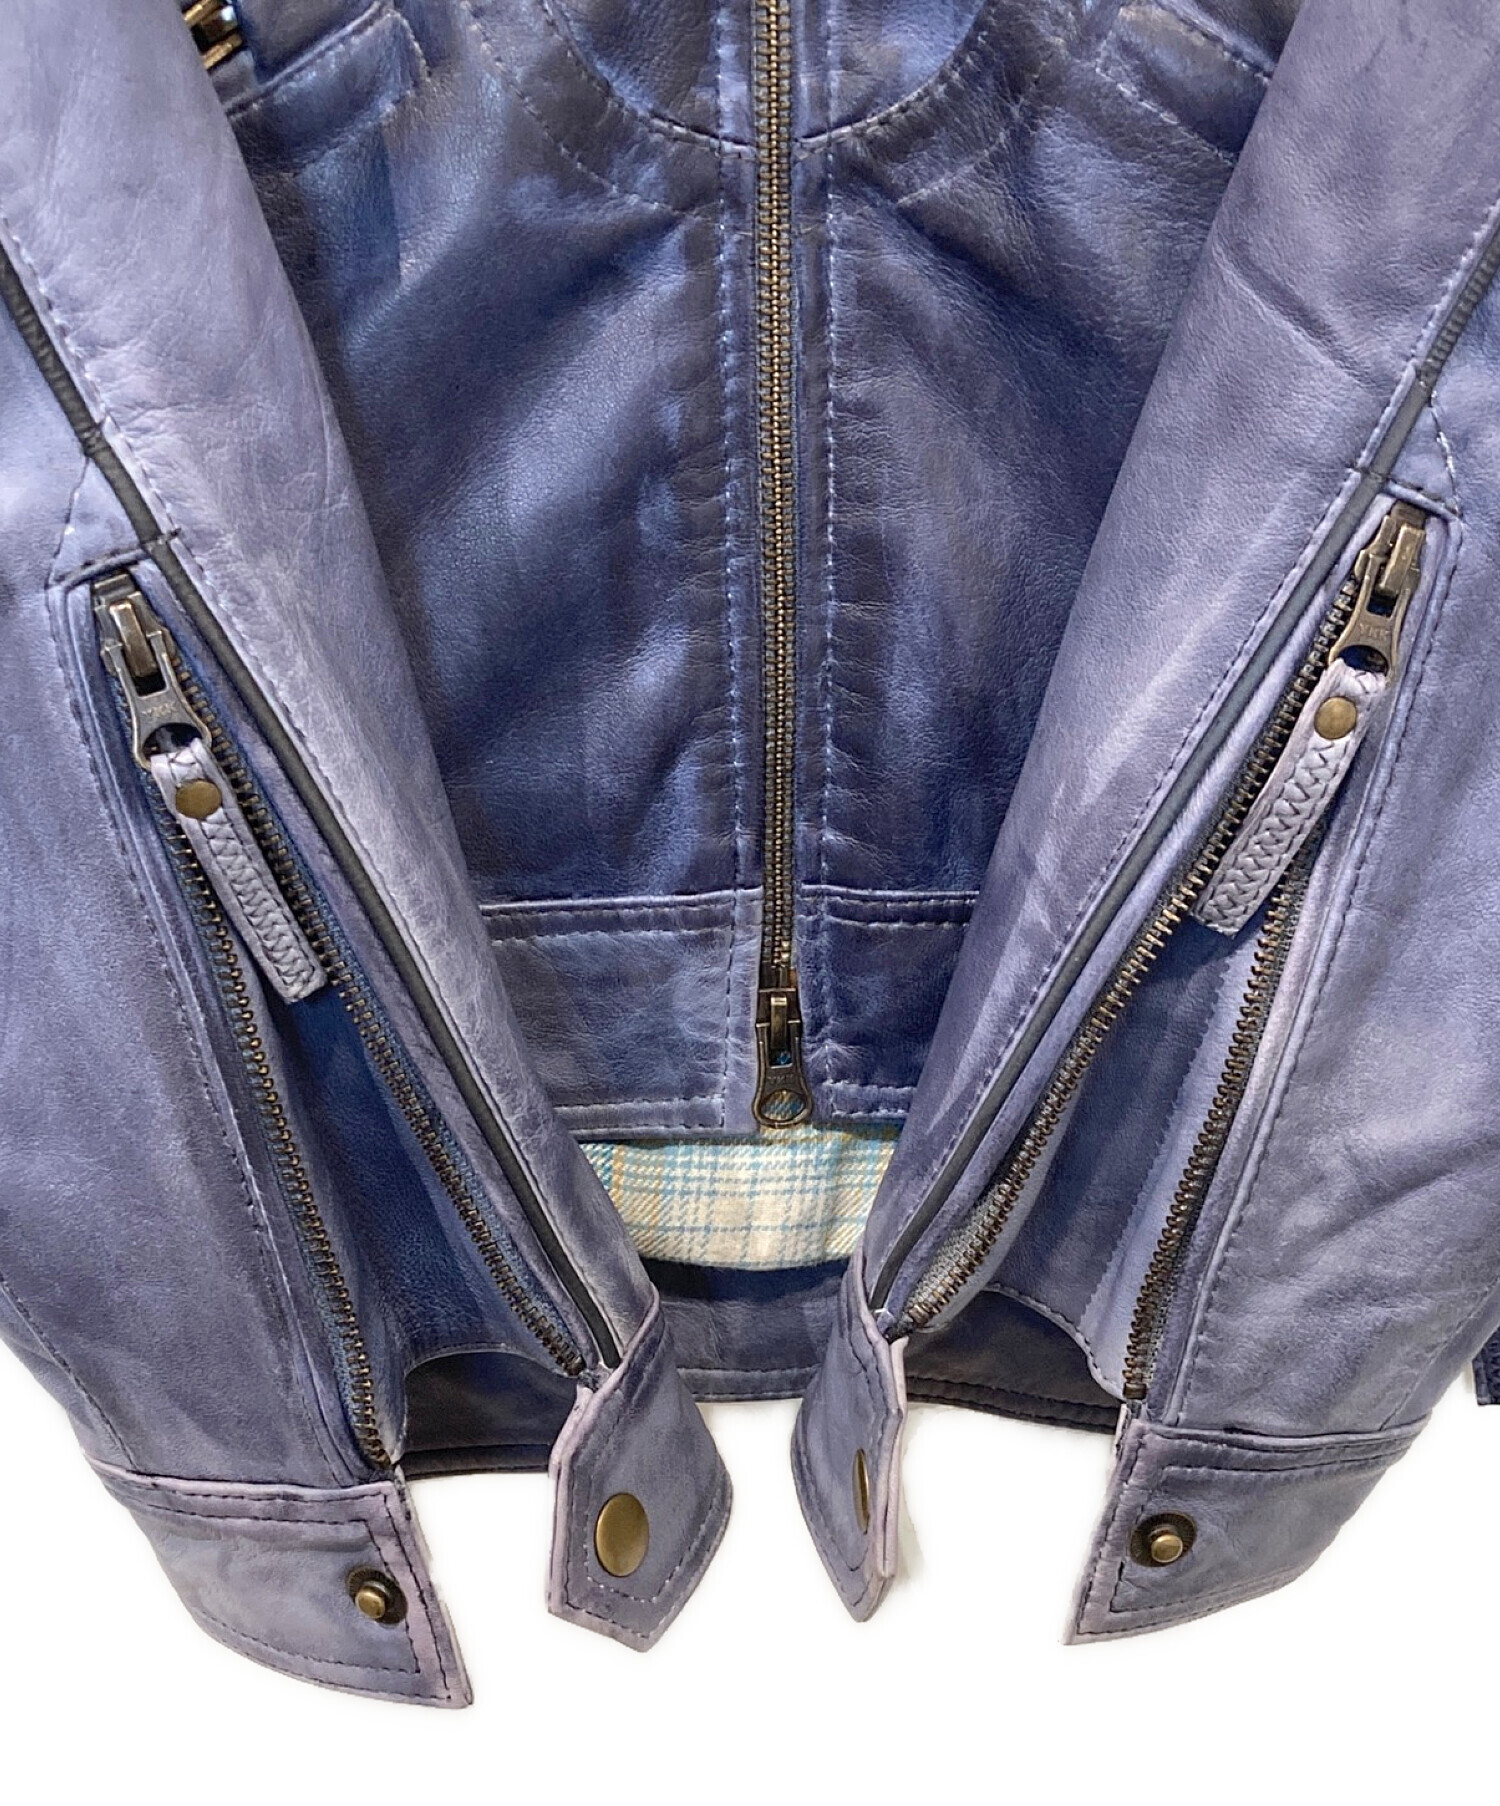 UNION JAP (ユニオンジャップ) ライダースジャケット ブルー サイズ:M